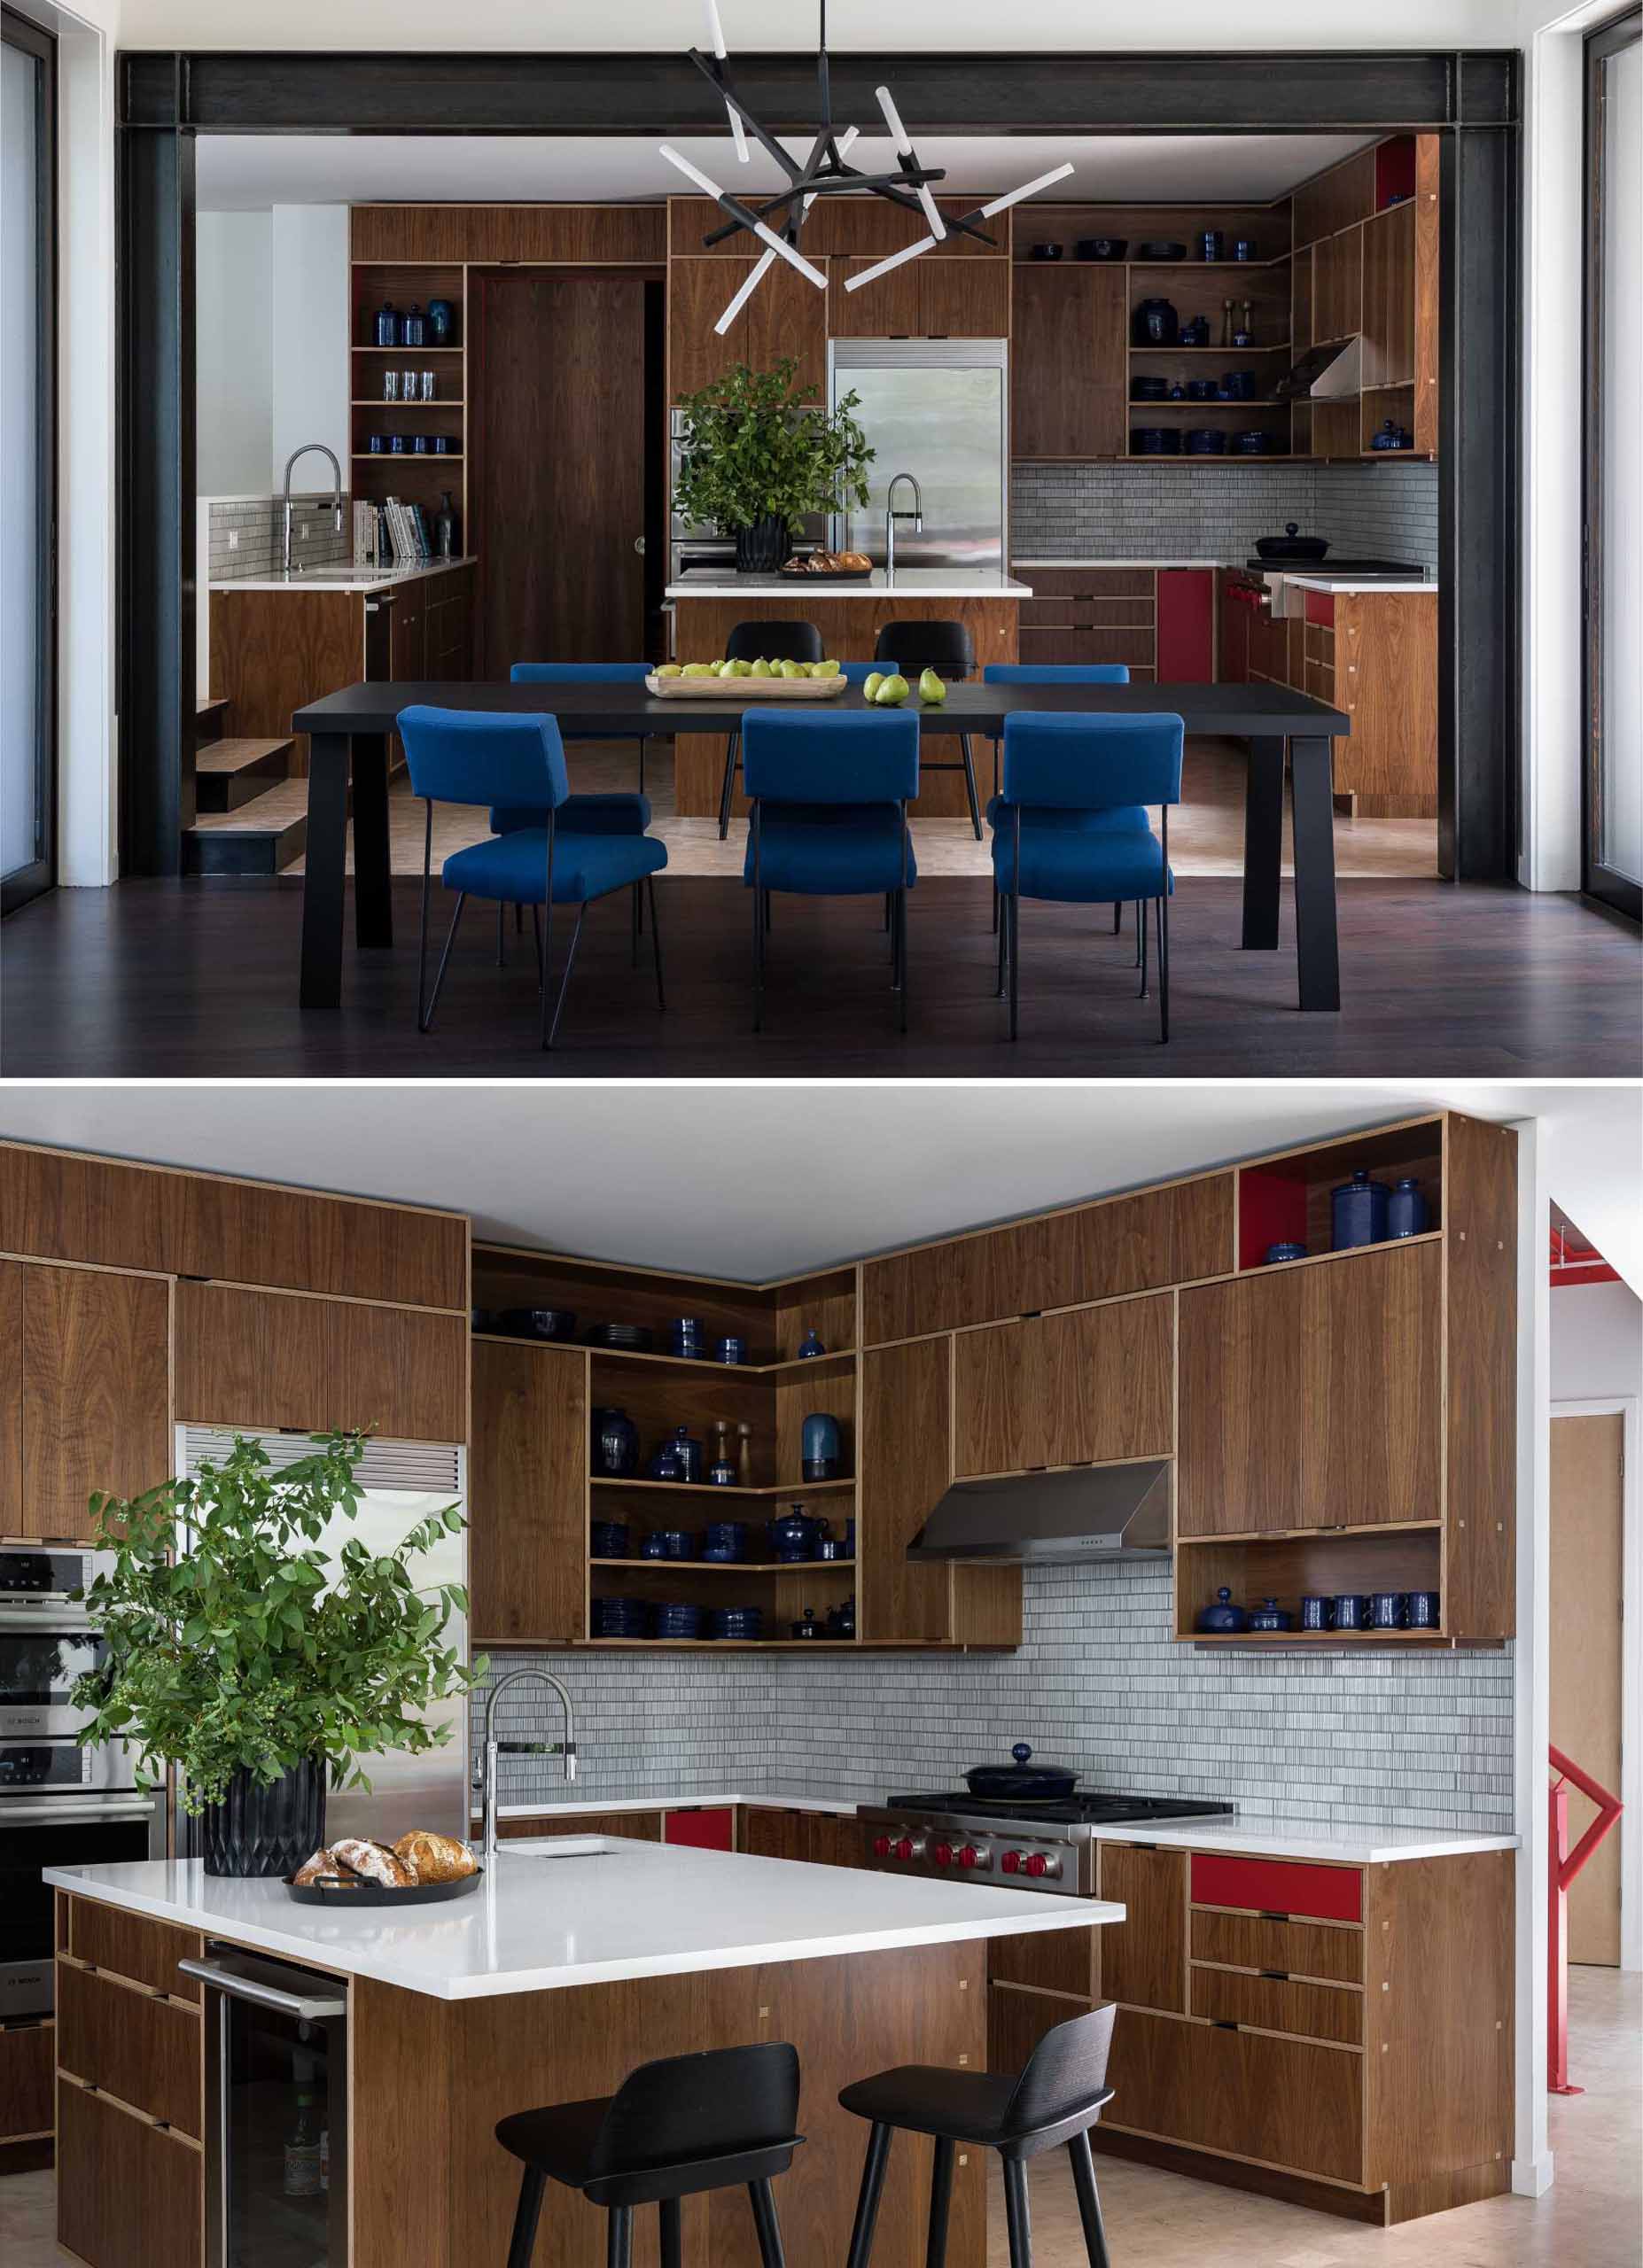 В этой современной кухне деревянные шкафы и полки, доходящие до потолка, подчеркнуты красными штрихами, а остров увеличивает количество доступного встречного пространства.